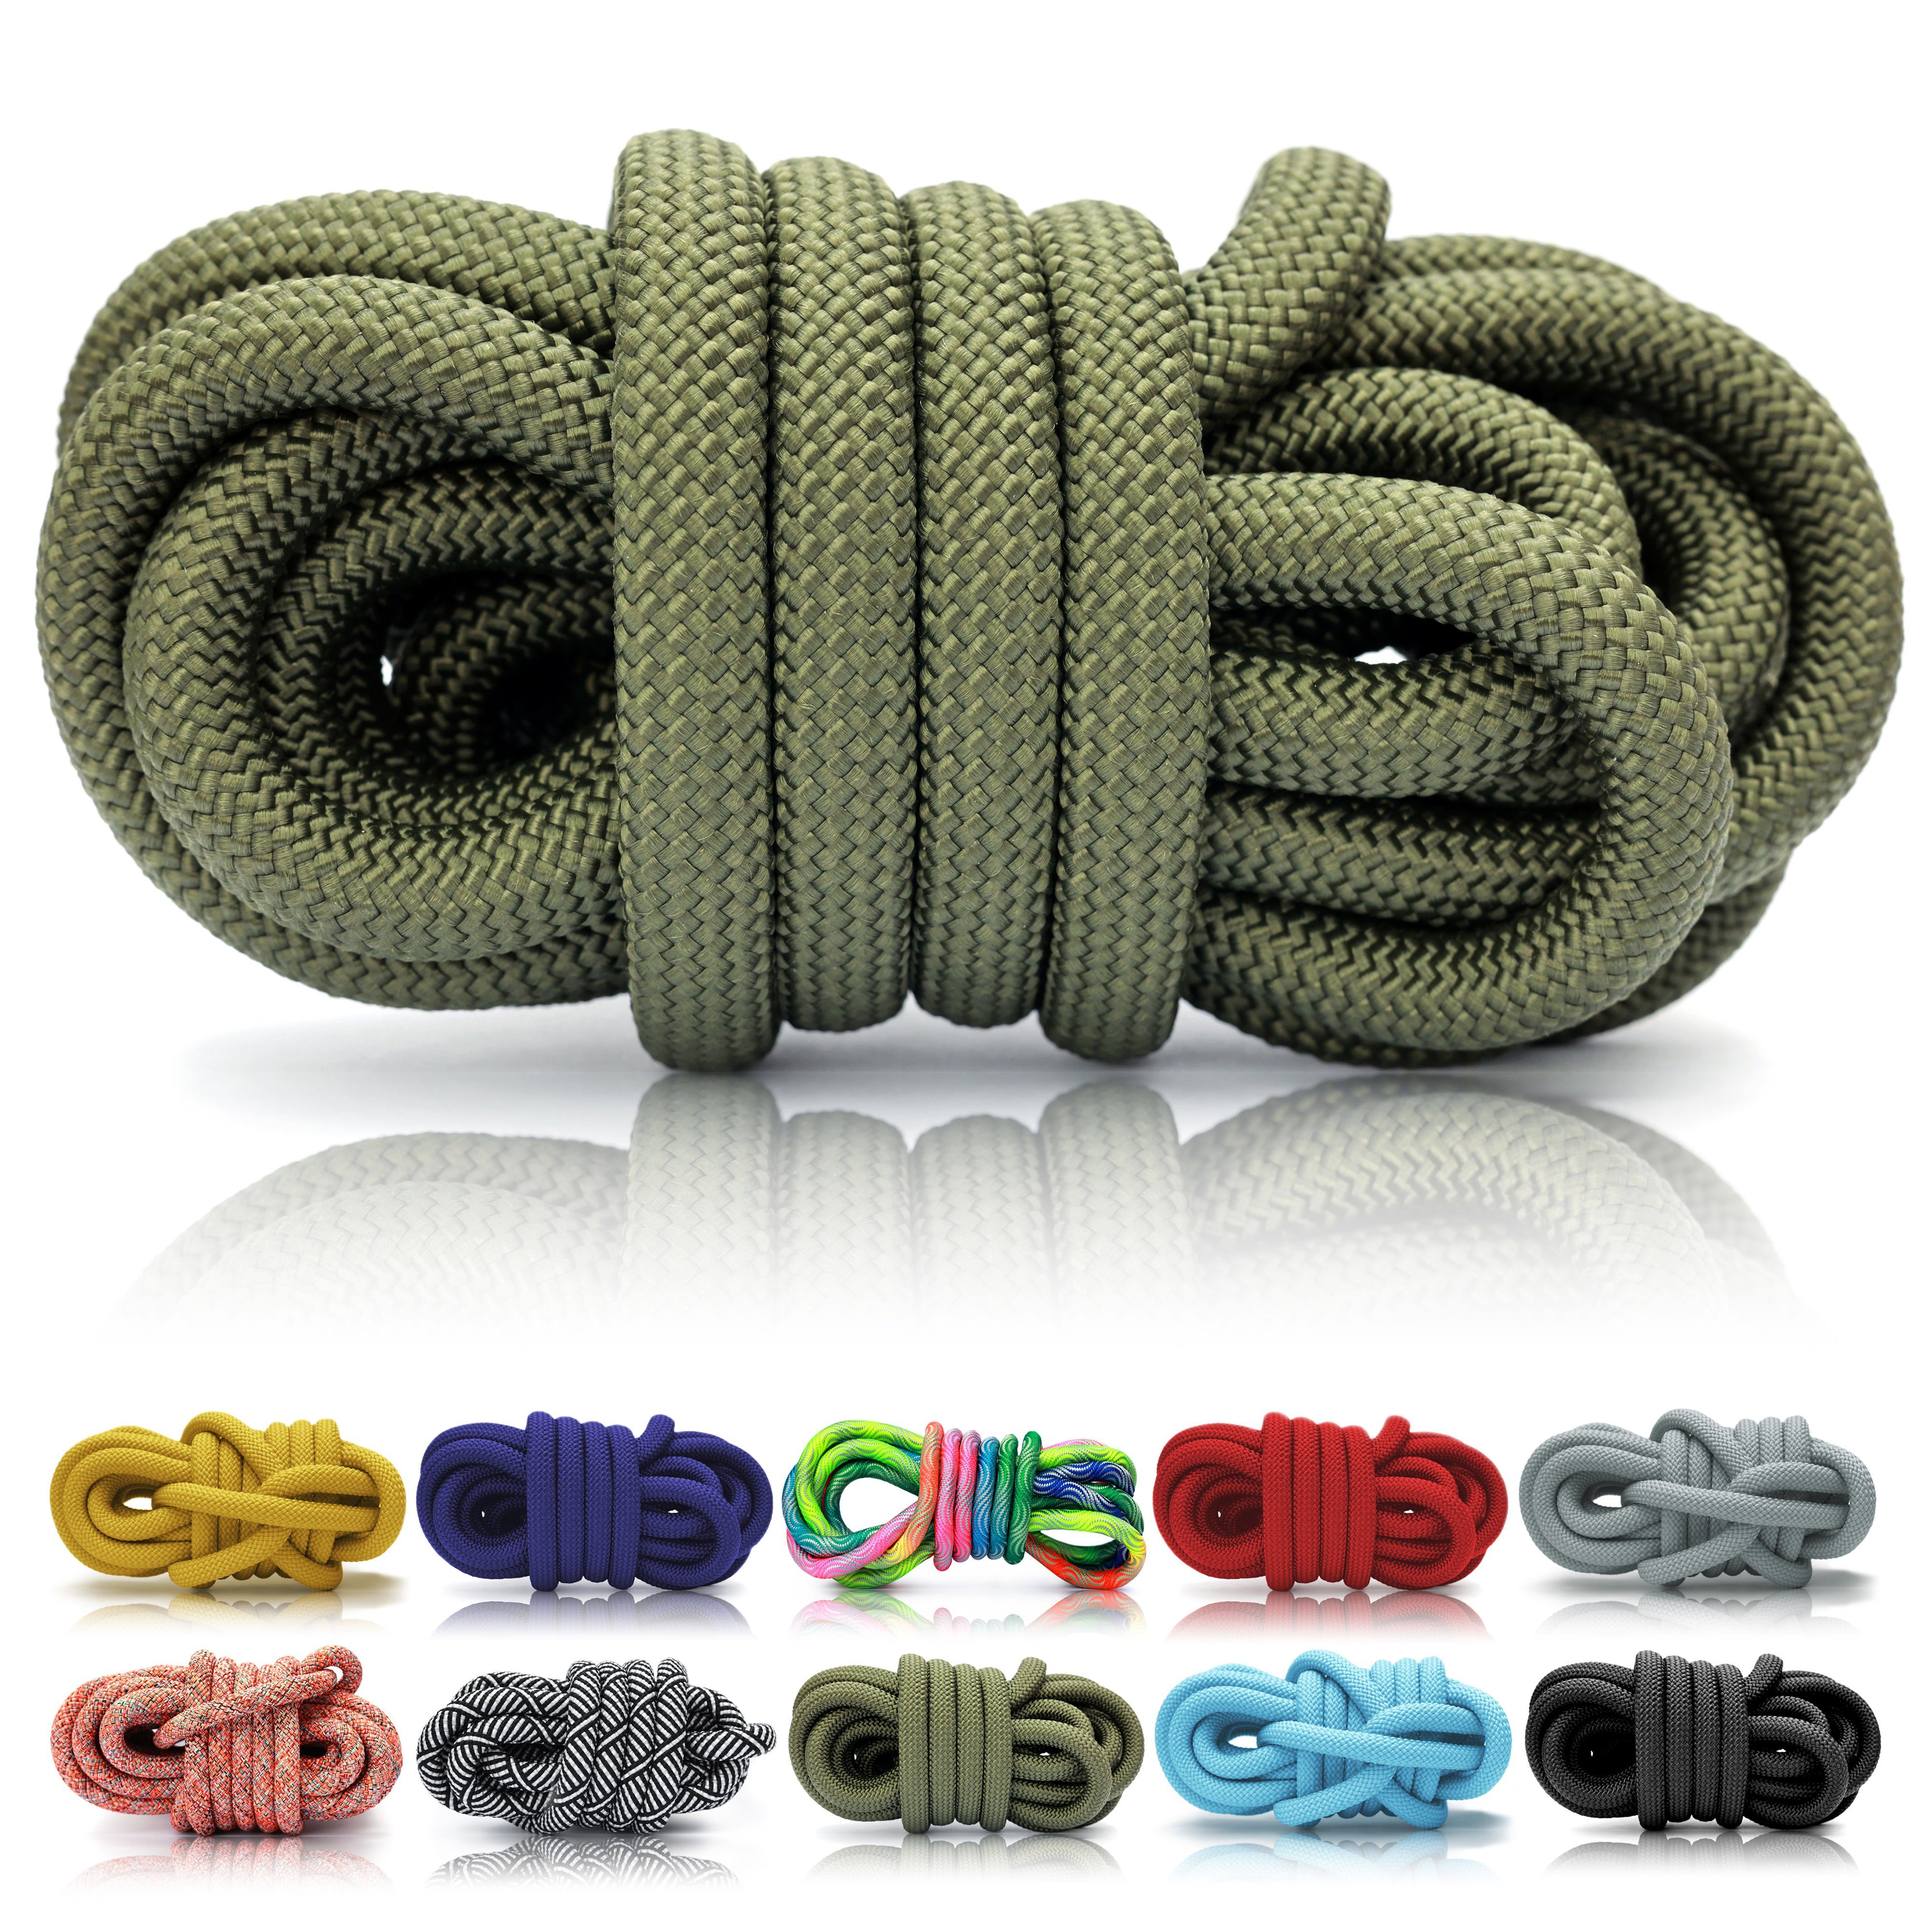 Ganzoo PPM Seil 5 Meter, Tauseil, Hunde-Leine, Halsband,Takeln,10mm,Armygreen Reepschnur